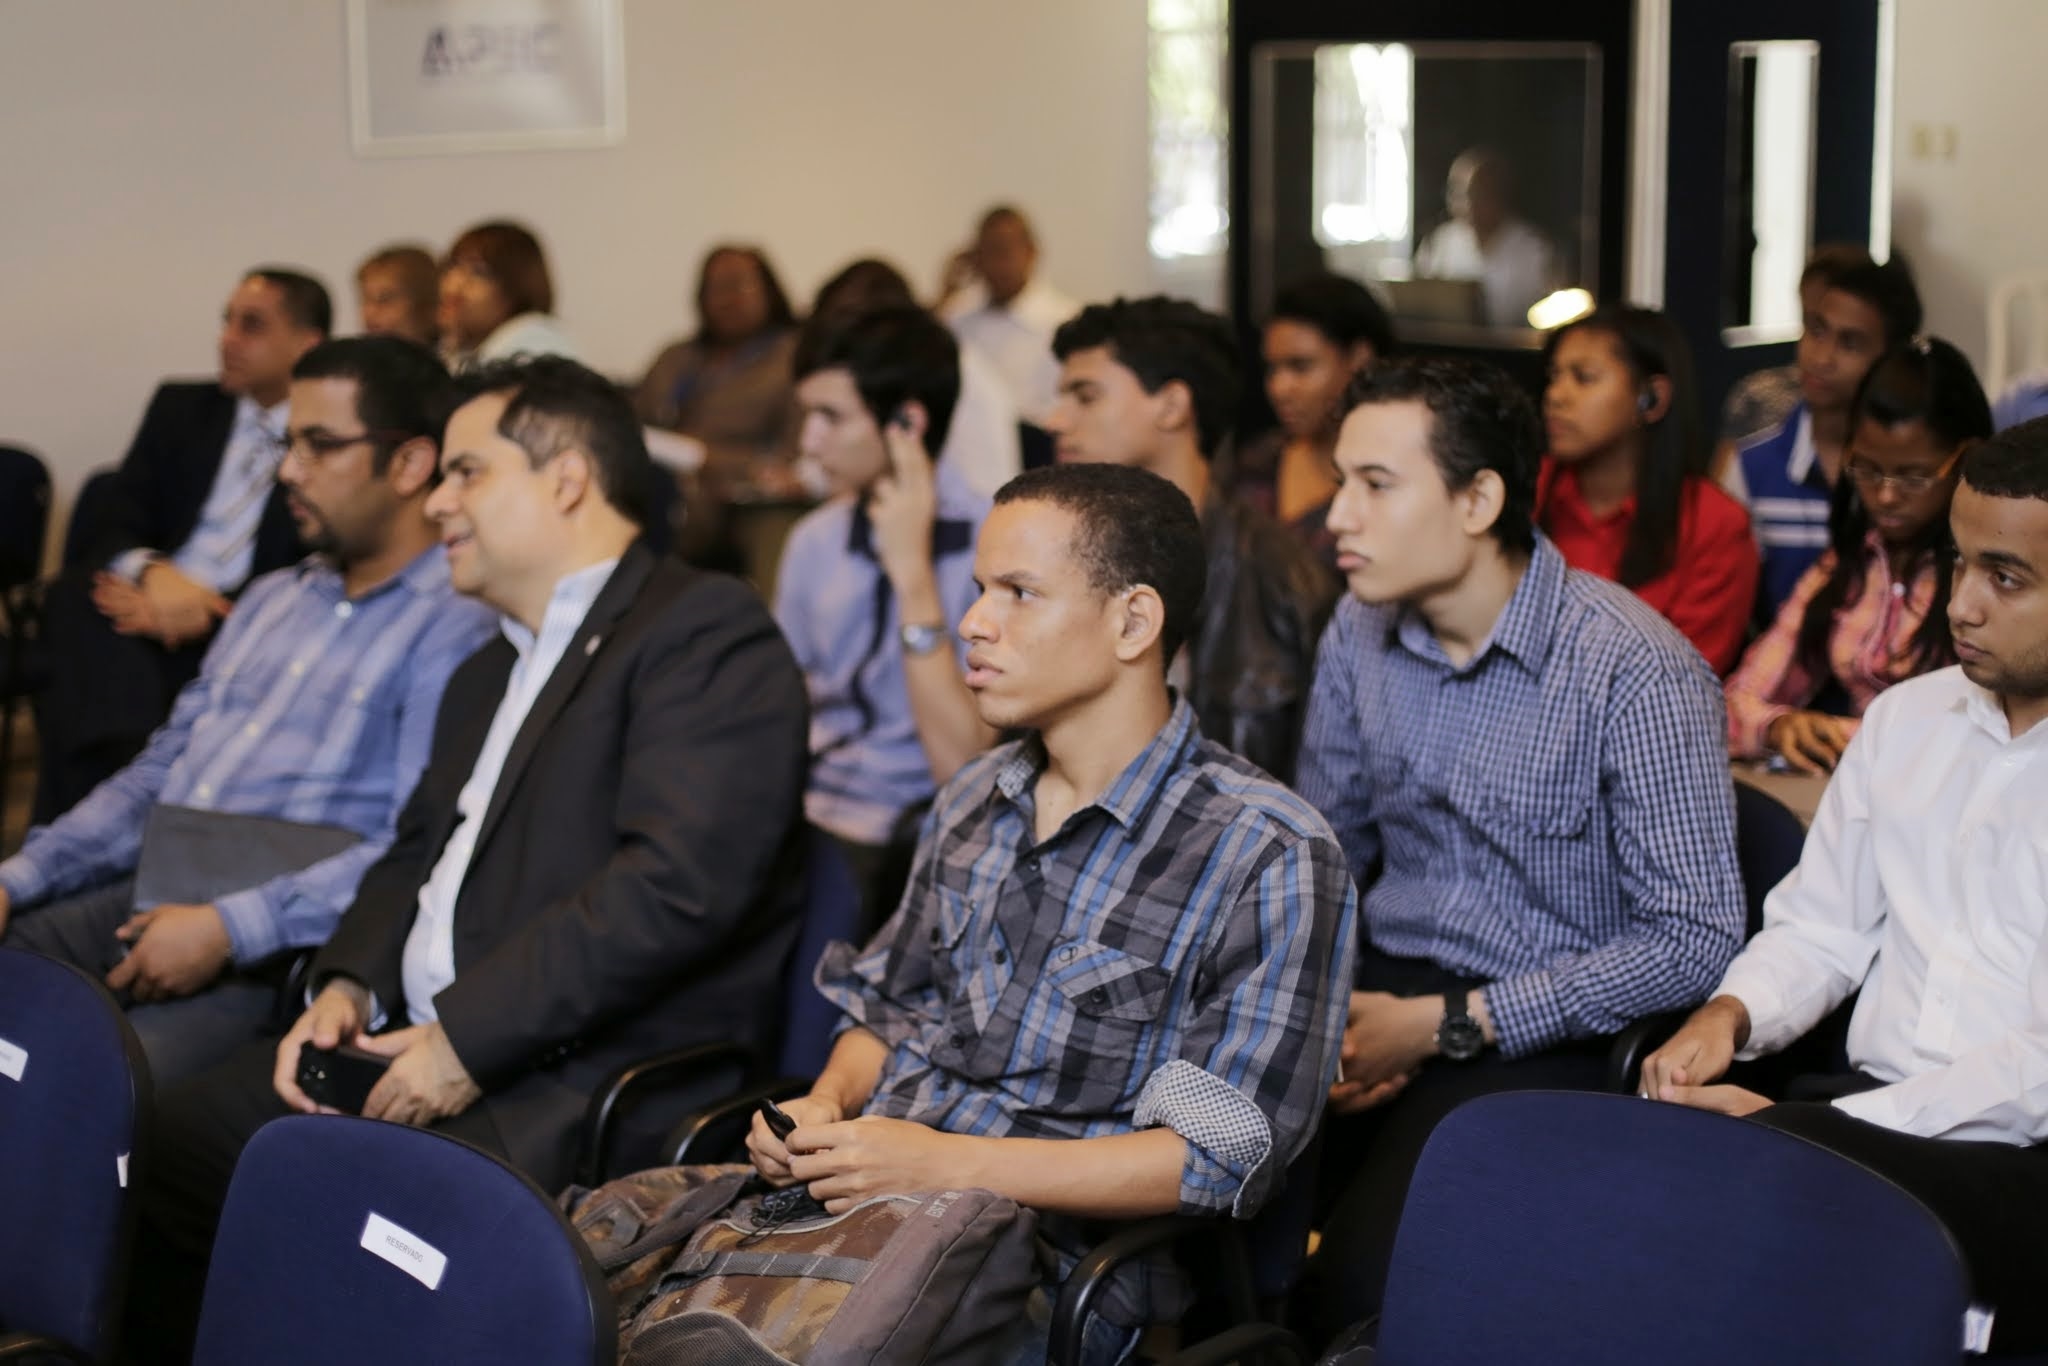 La actividad fue realizada en el Salón APEC José María Bonetti y fue dirigida a estudiantes y egresados emprendedores